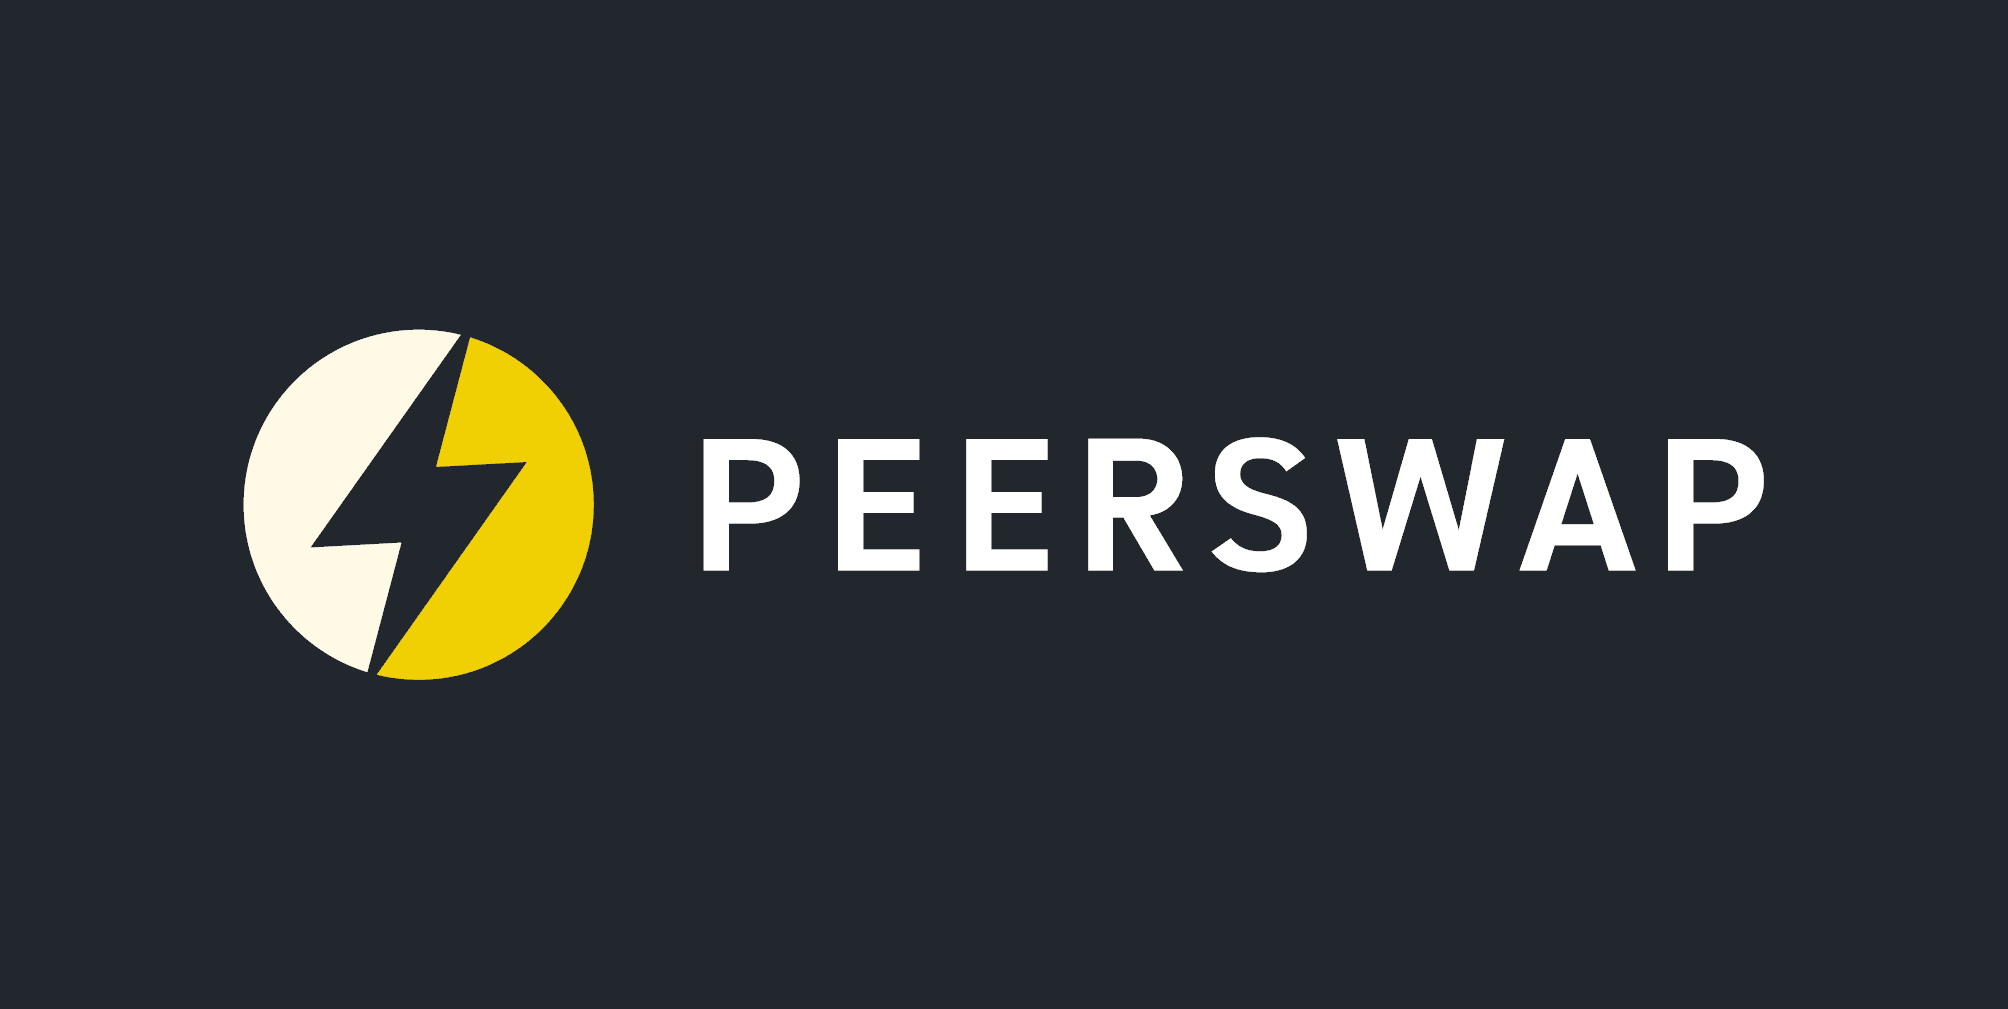 peerswap-logo.png